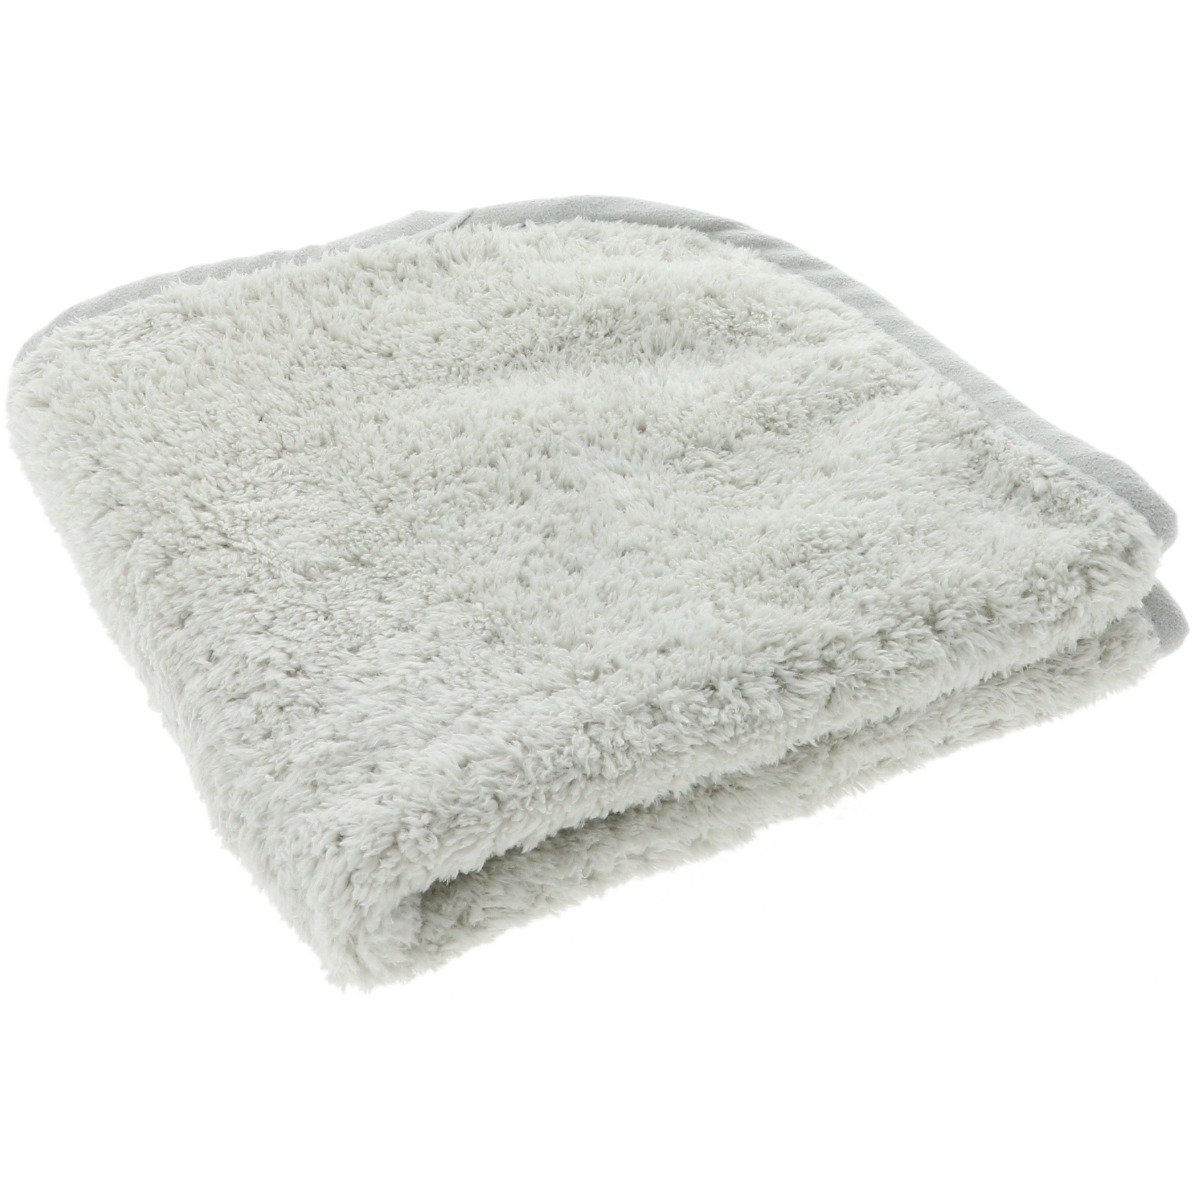 Platinum Pluffle Premium Detailing Towel - 41x41cm